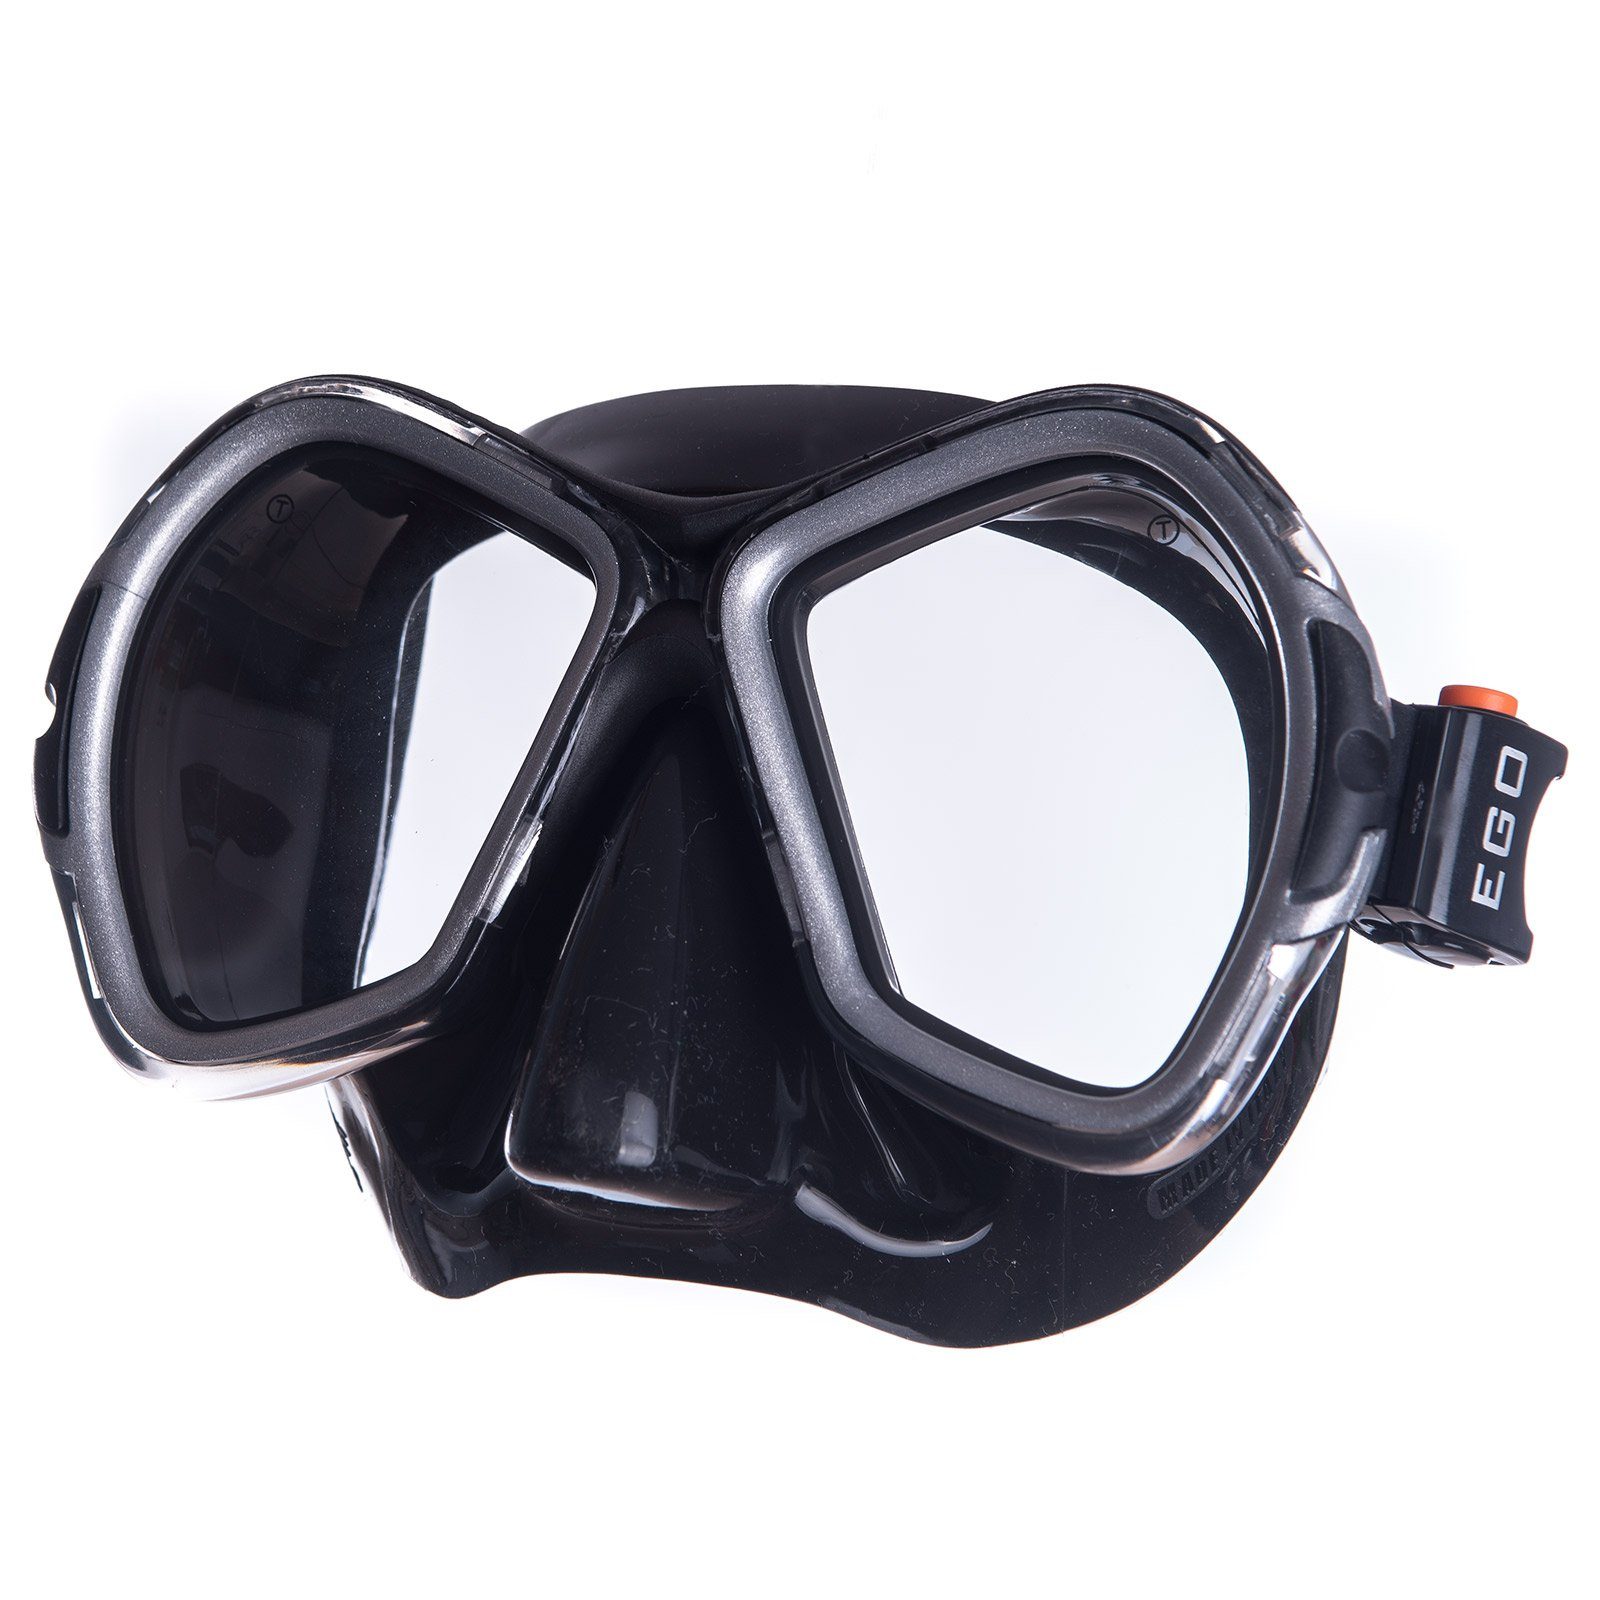 Salvas Schwimmbrille Tauch Maske Phoenix Schnorchel, Schwimm Brille Beschlag Erwachsene Silikon schwarz